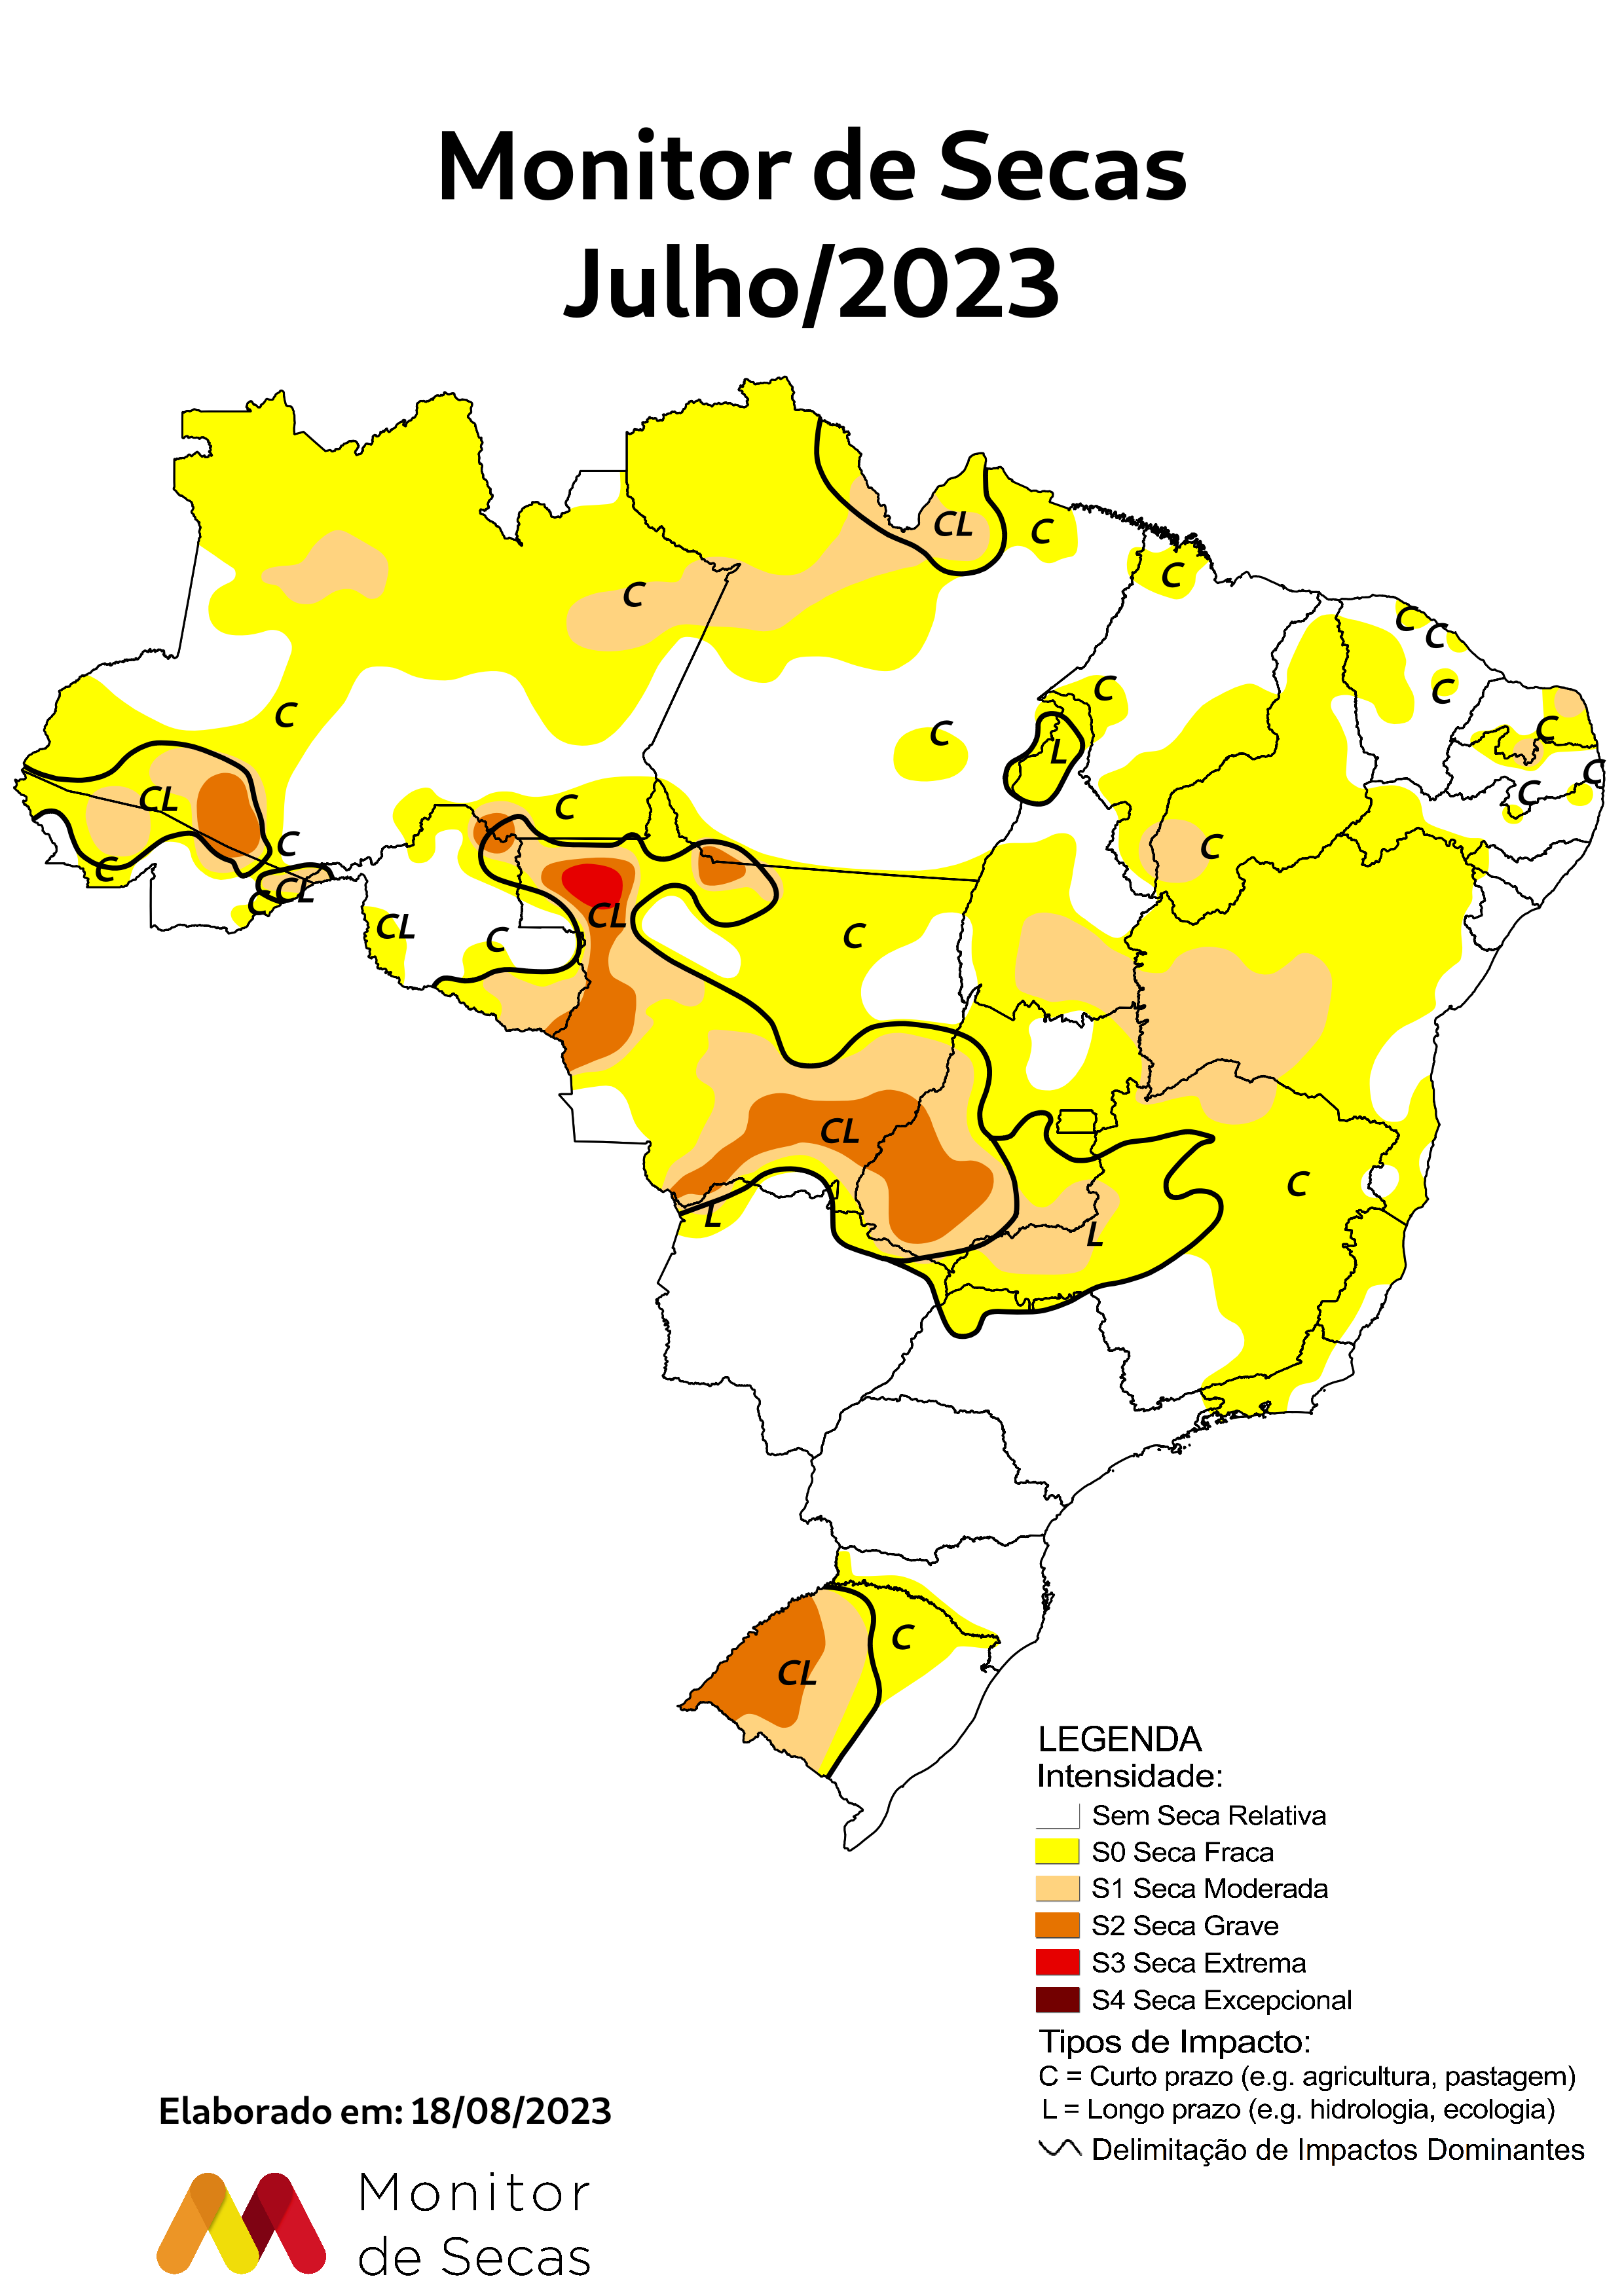 Novo mapa indica seca fraca no Ceará (FOTO: Monitor de Secas)